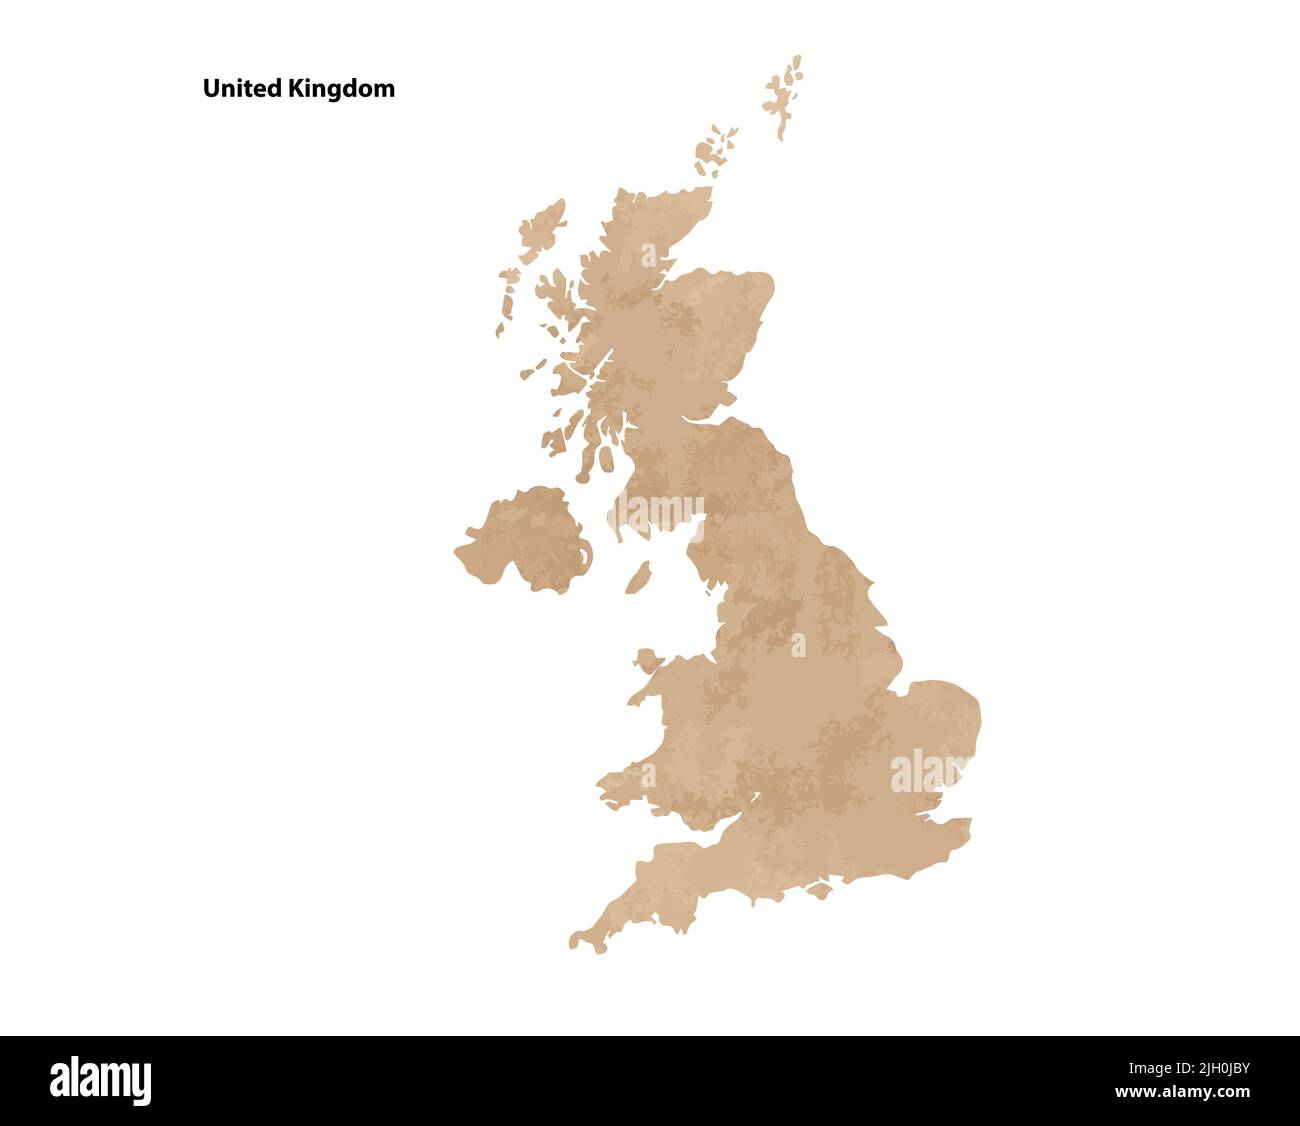 Antiguo papel vintage mapa texturizado del Reino Unido País - ilustración de vectores Ilustración del Vector